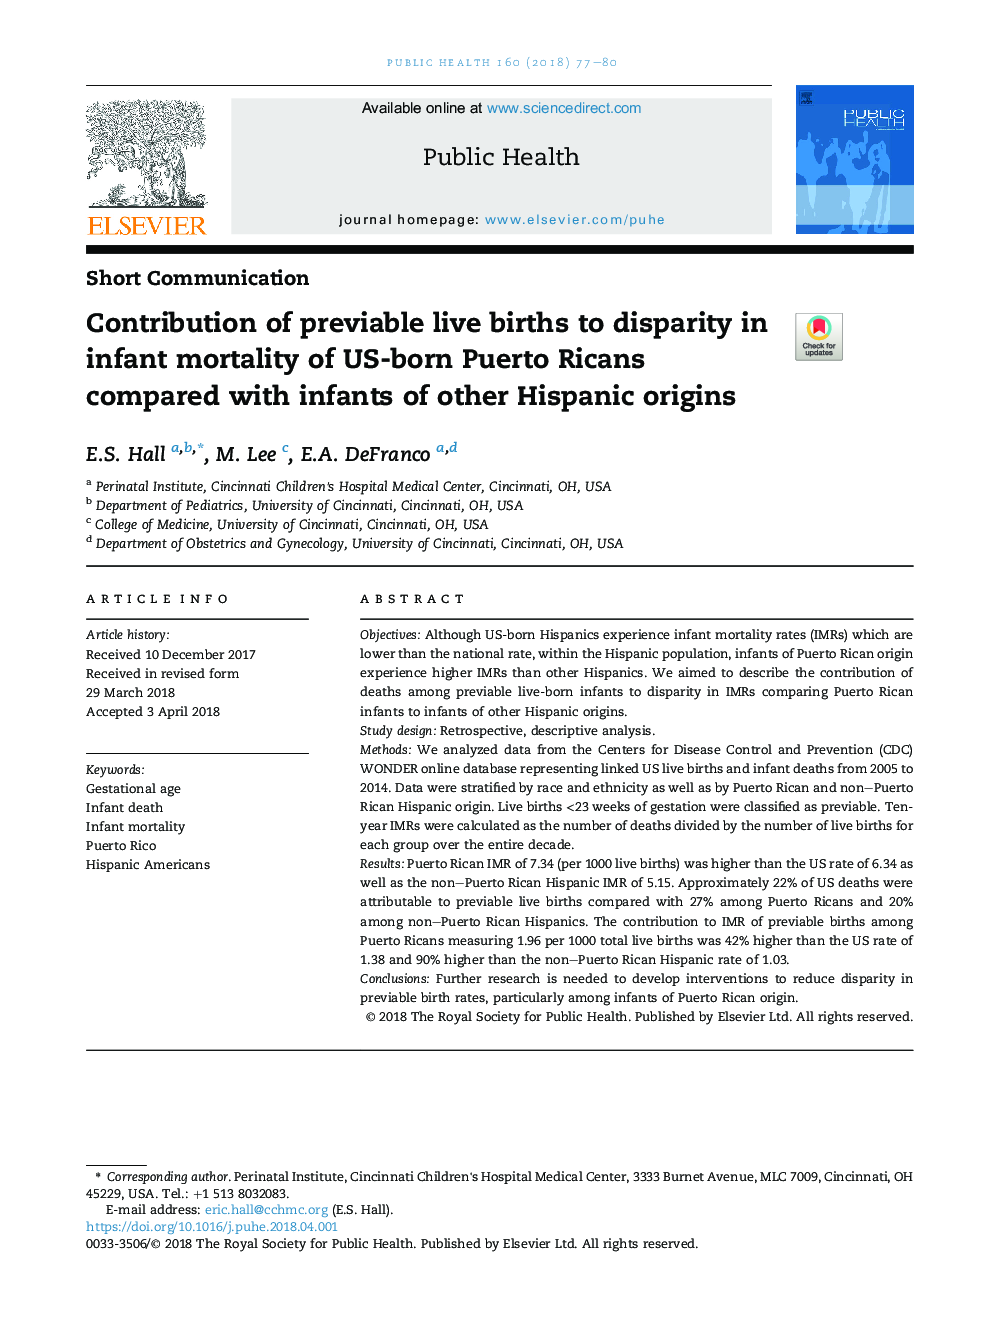 مشارکت تولد زنده مانع از نابرابری در مرگ و میر نوزادان پورتوریکن در ایالات متحده در مقایسه با نوزادان دیگر نژادهای اسپانیایی 